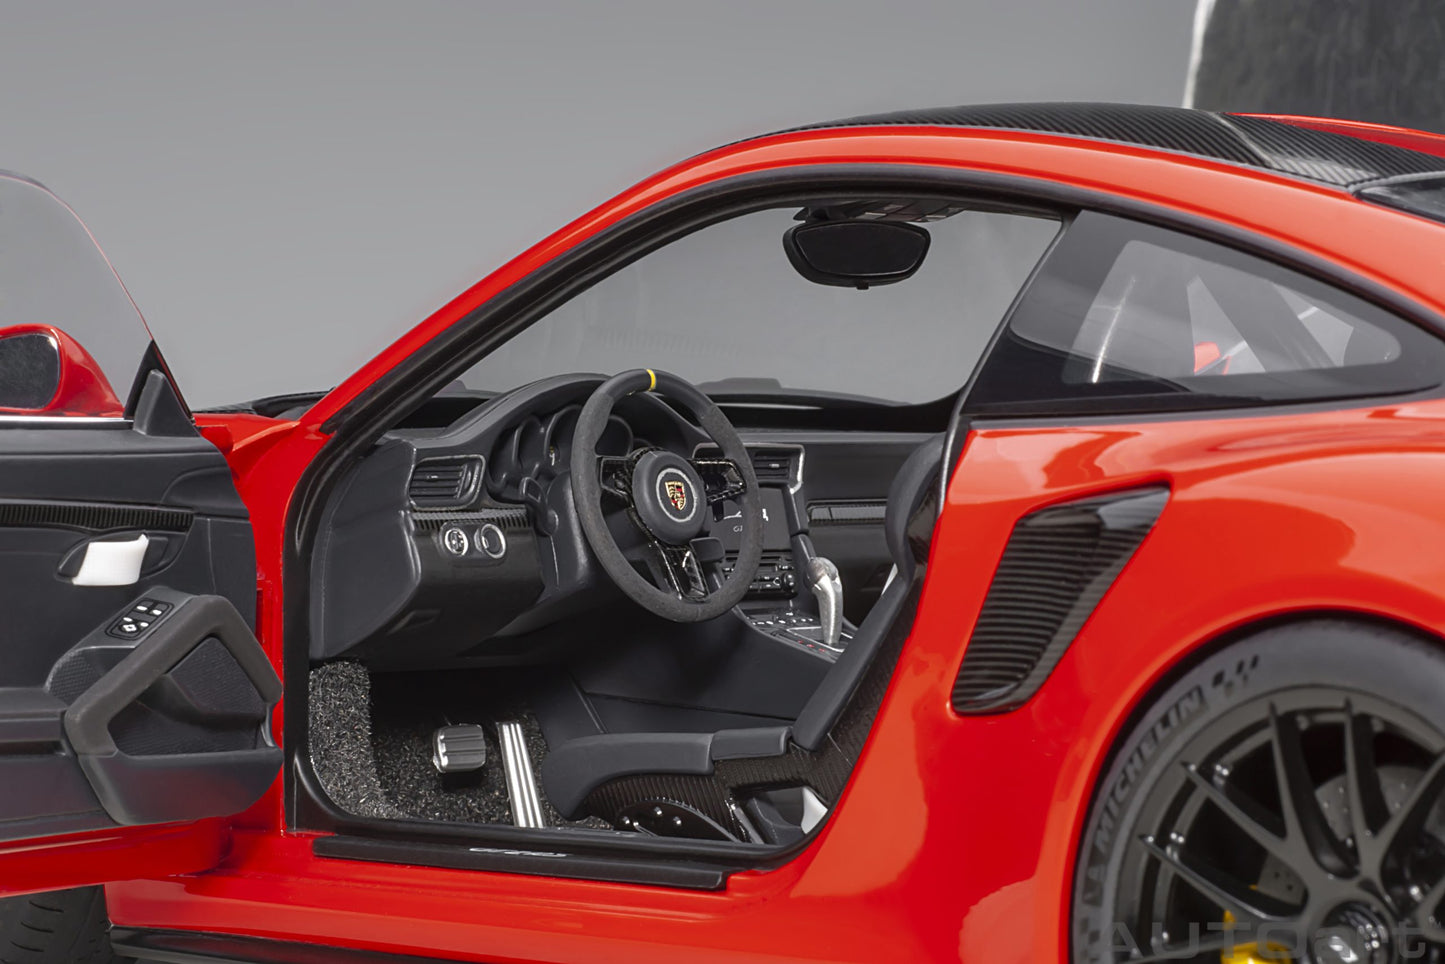 AUTOart 1:18 Porsche 911 (991.2) GT2 RS Weissach Package (Guards Red) 78173